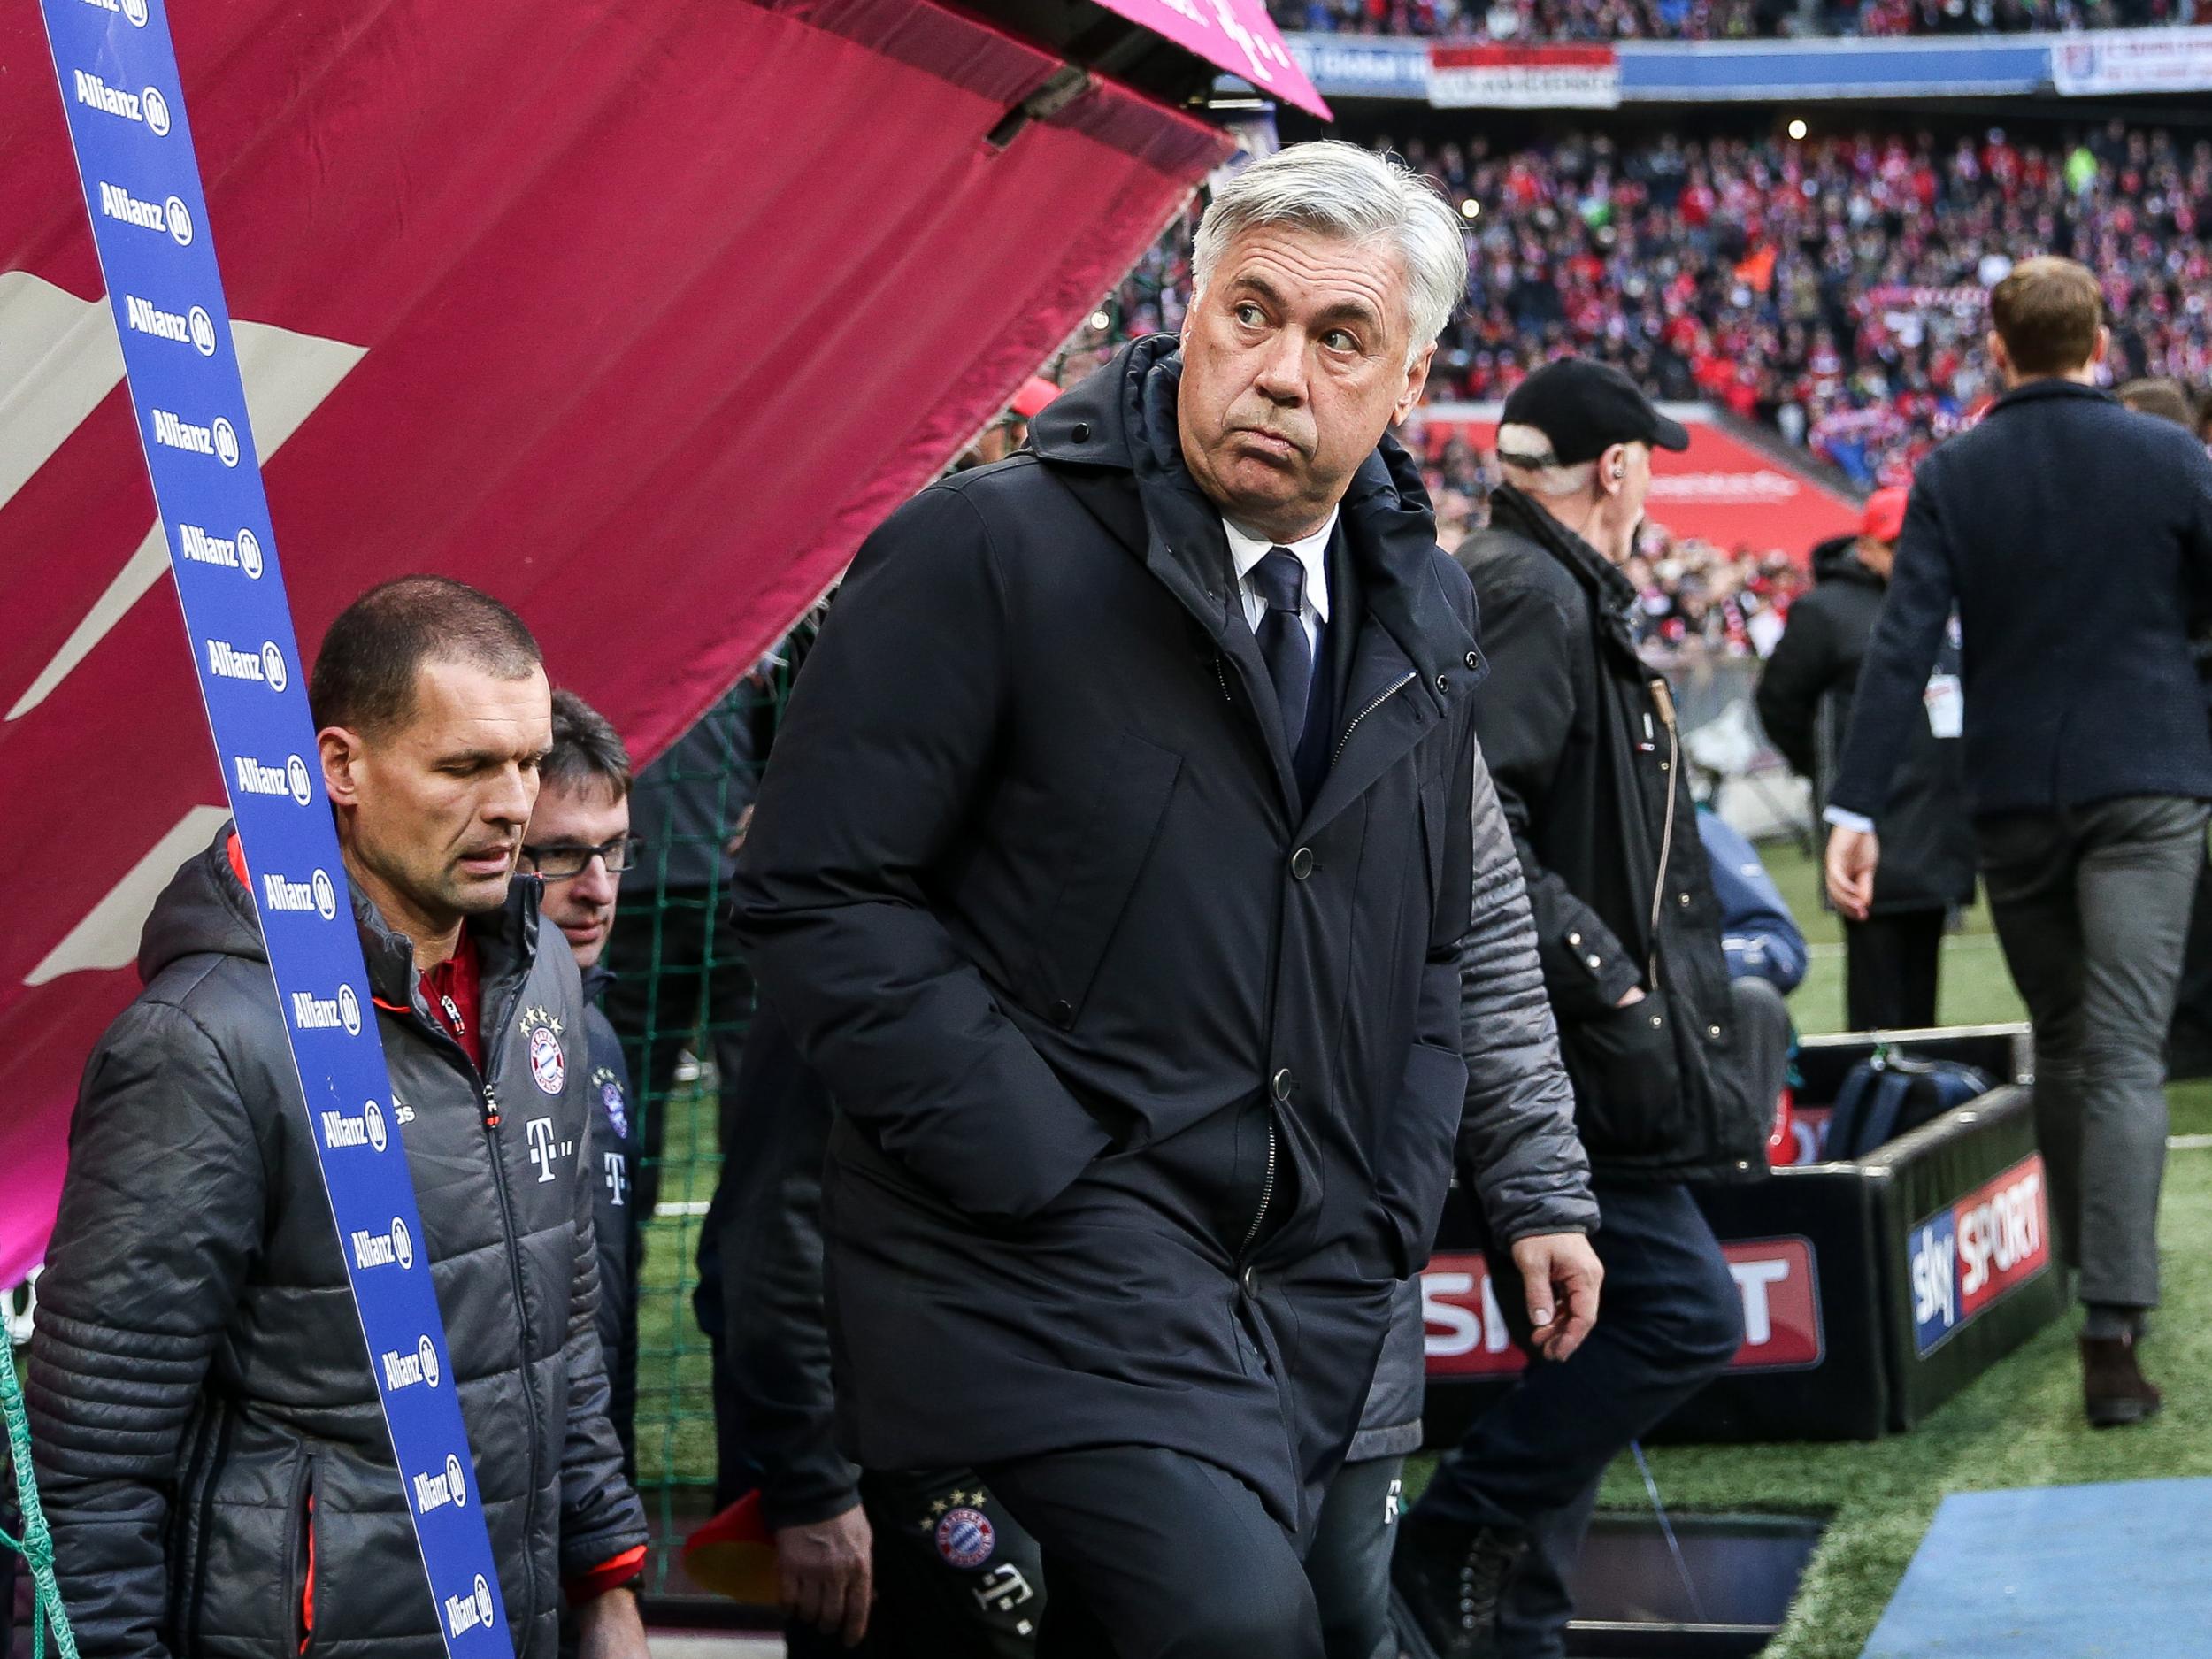 Bayern have had their worst start since 2011-12 under Ancelotti